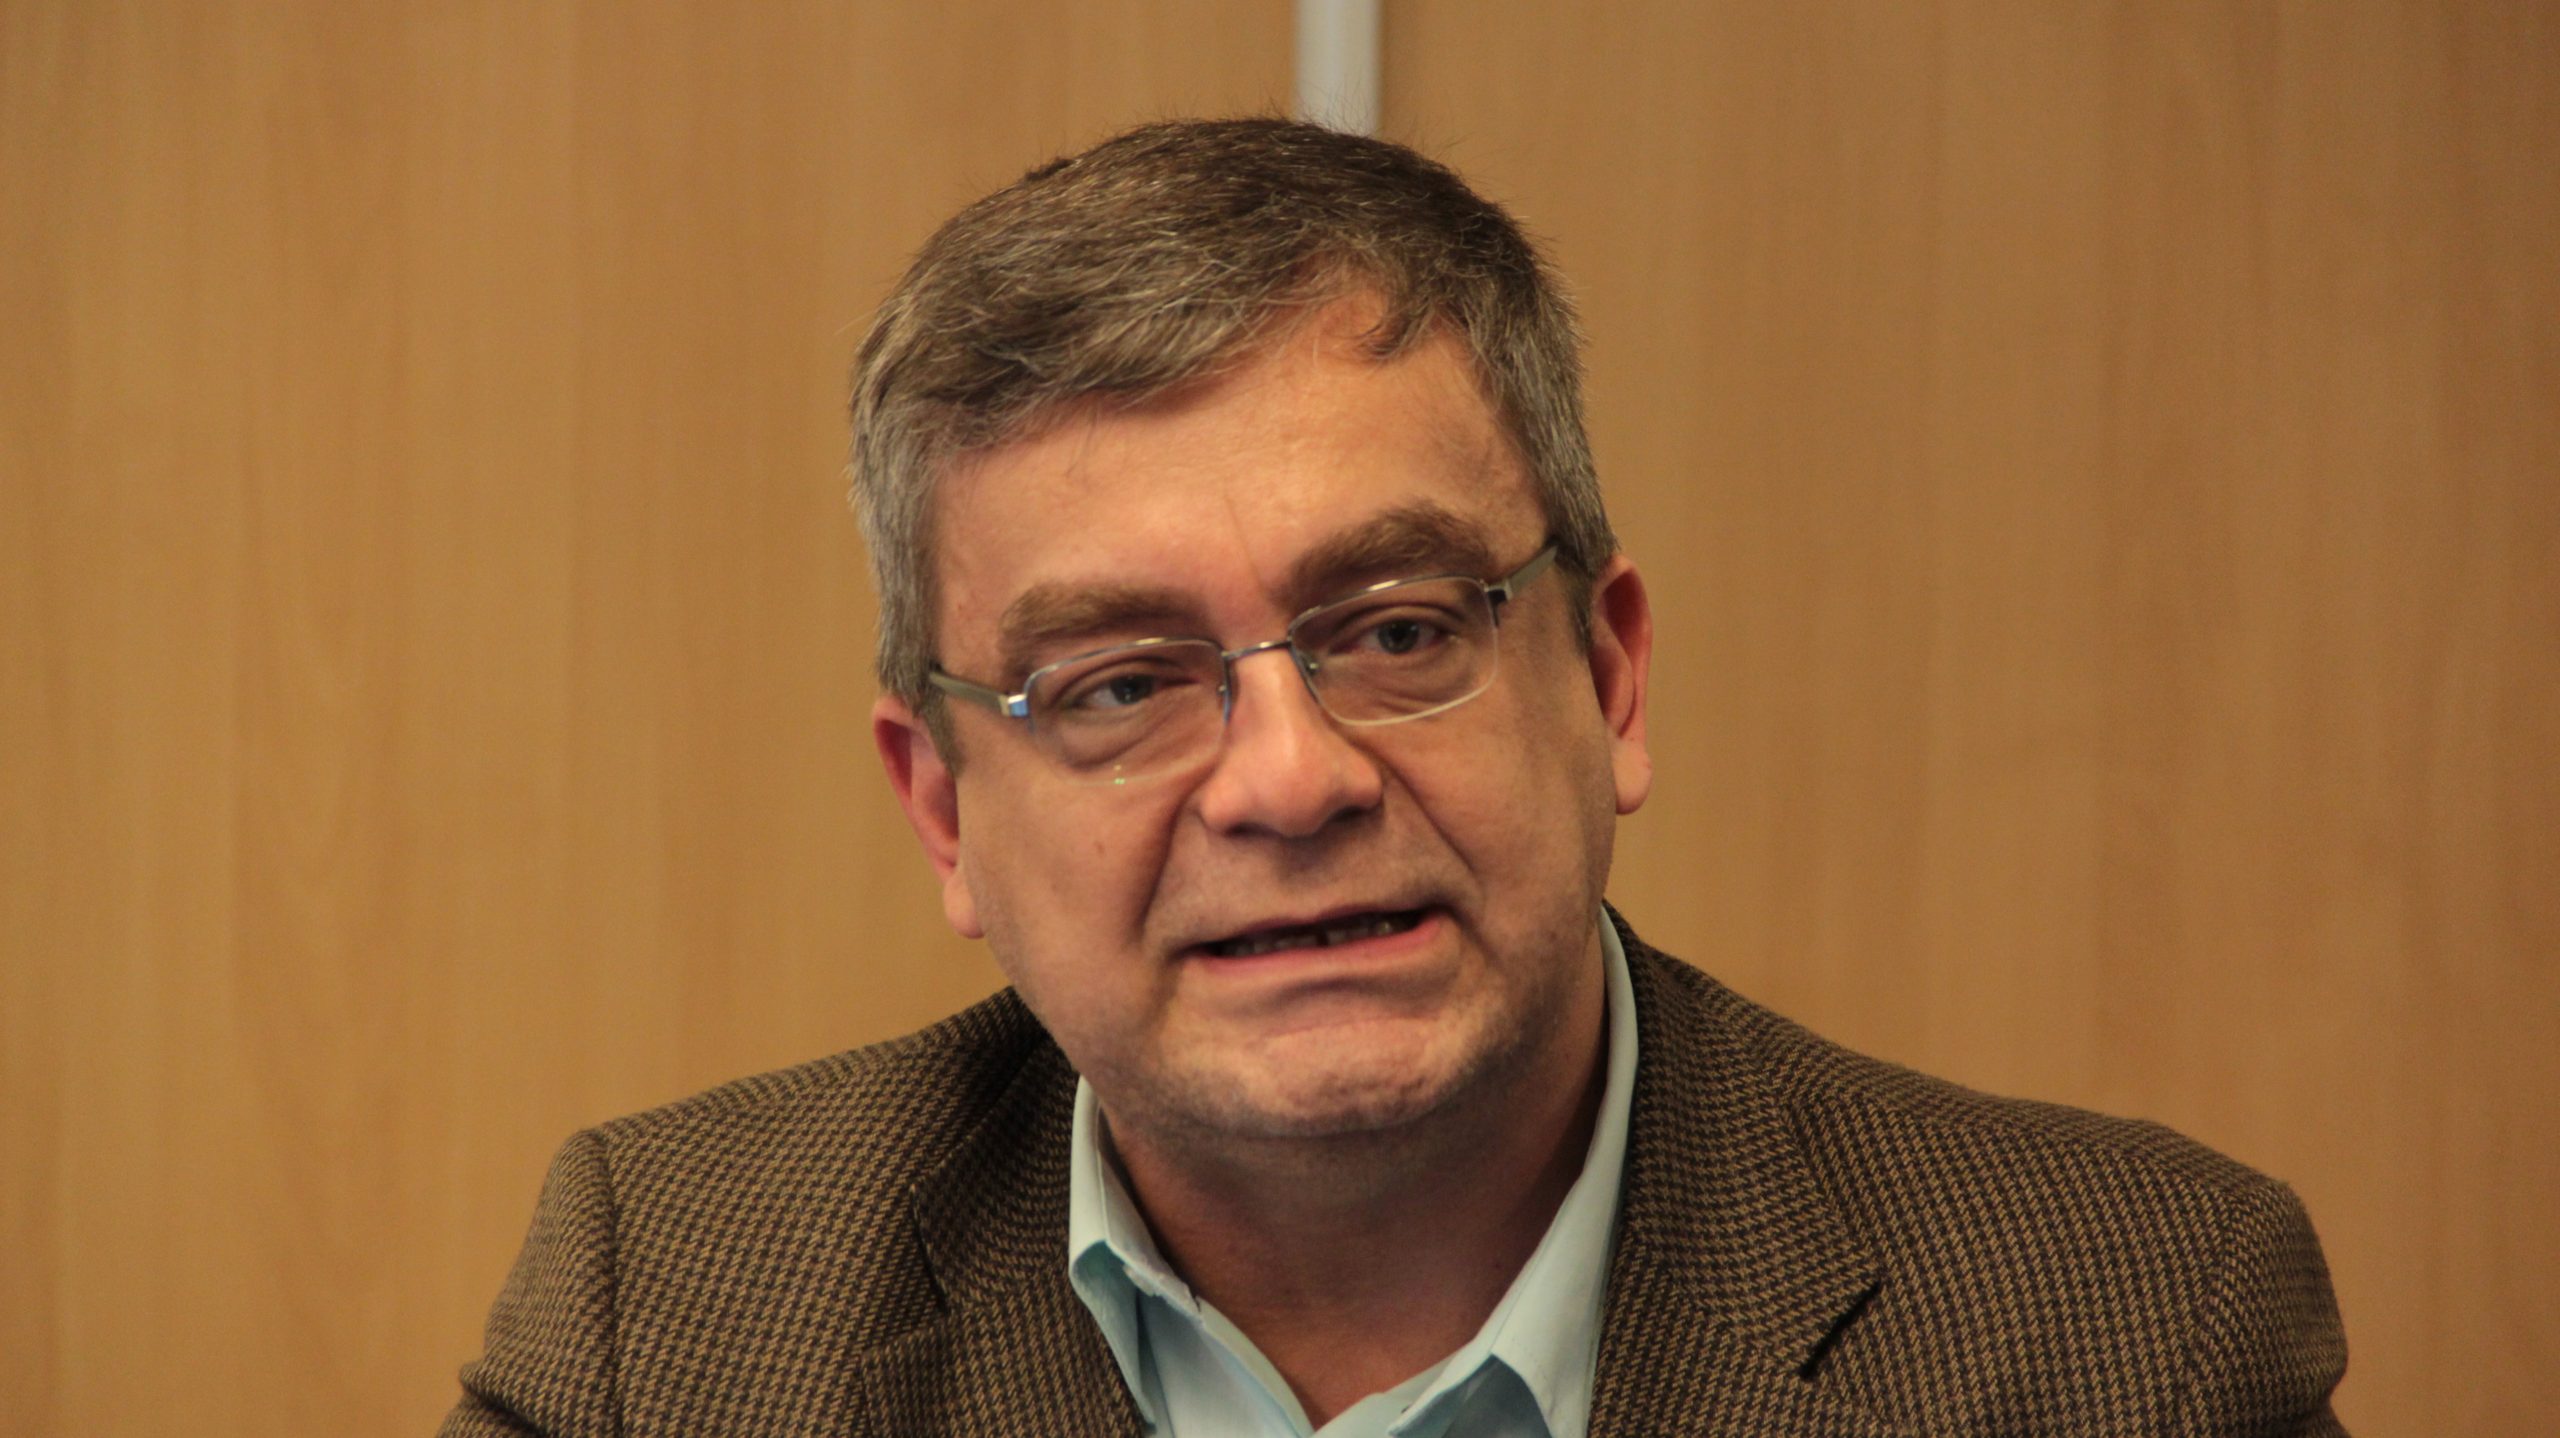 Rogério Schmitt: Ainda é muito cedo para qualquer prognóstico sobre o resultado das eleições deste ano.